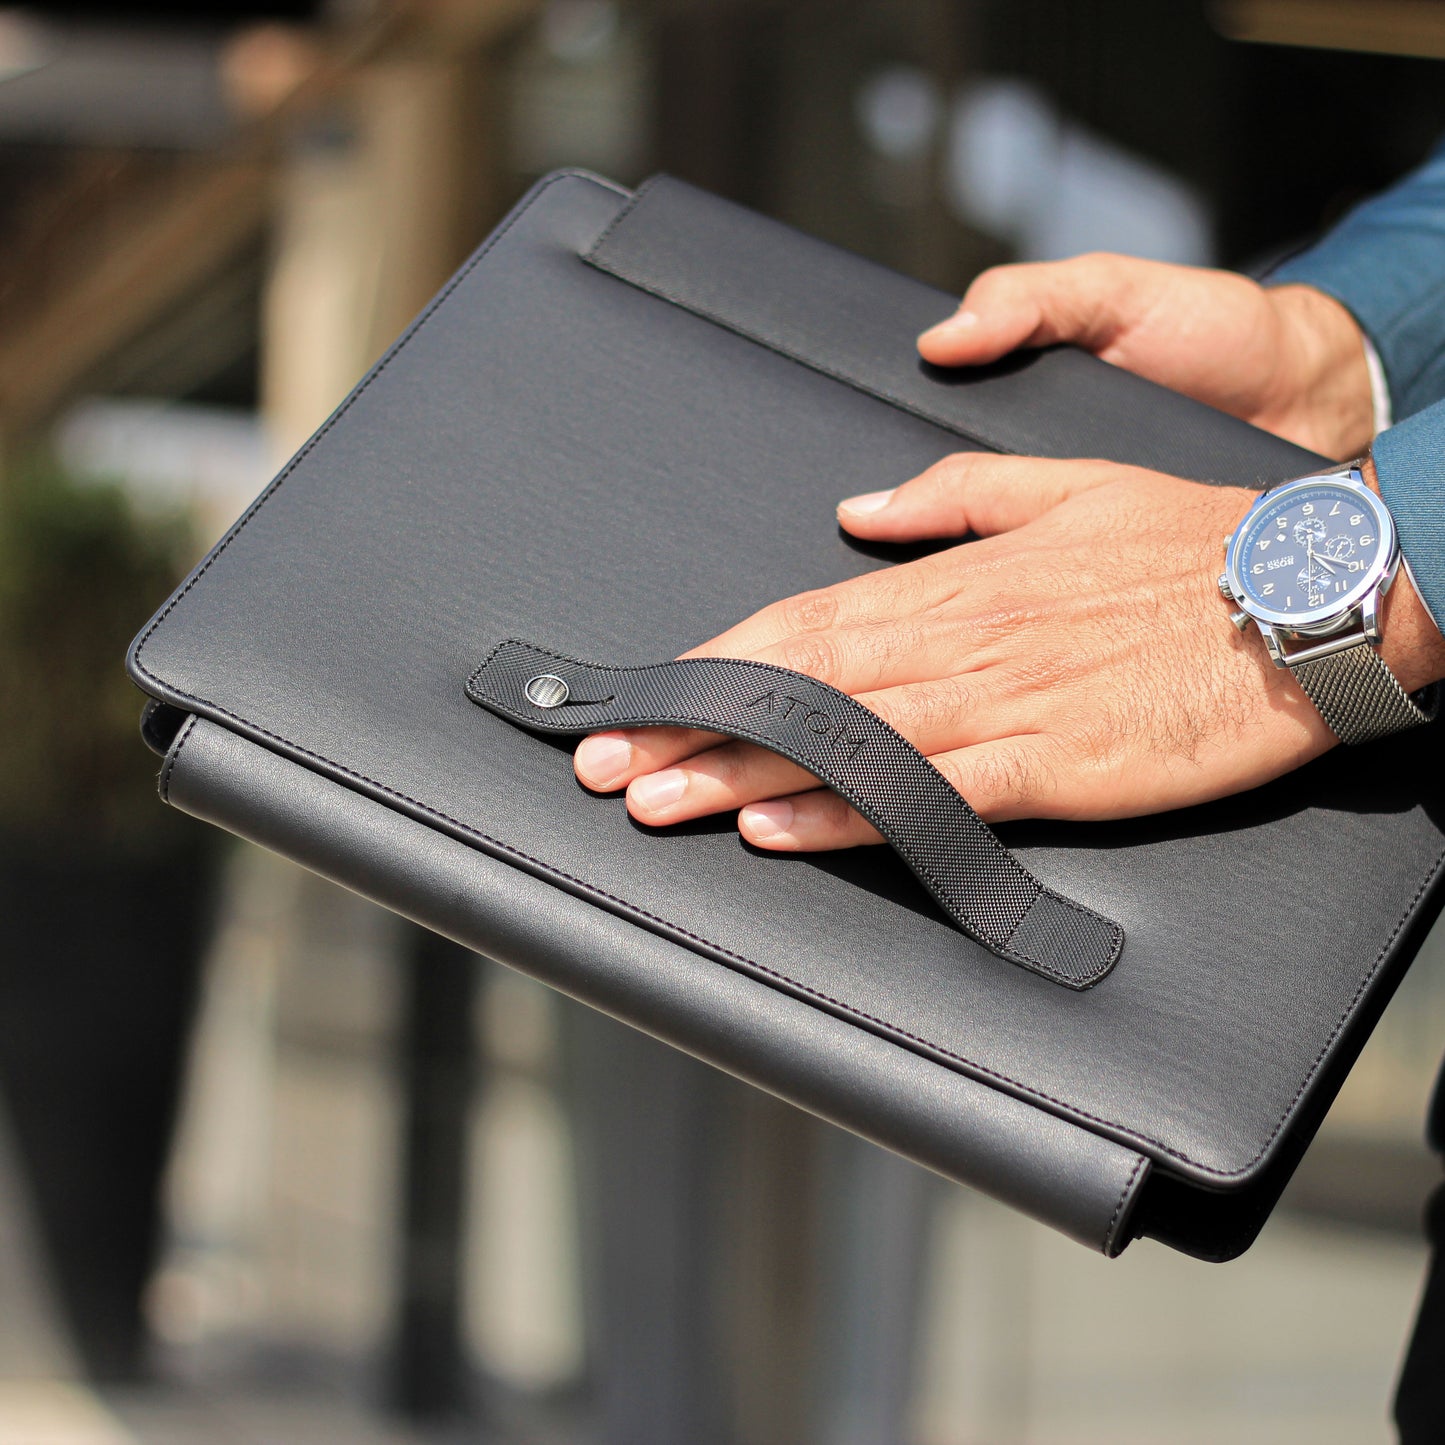 Black slim laptop sleeve